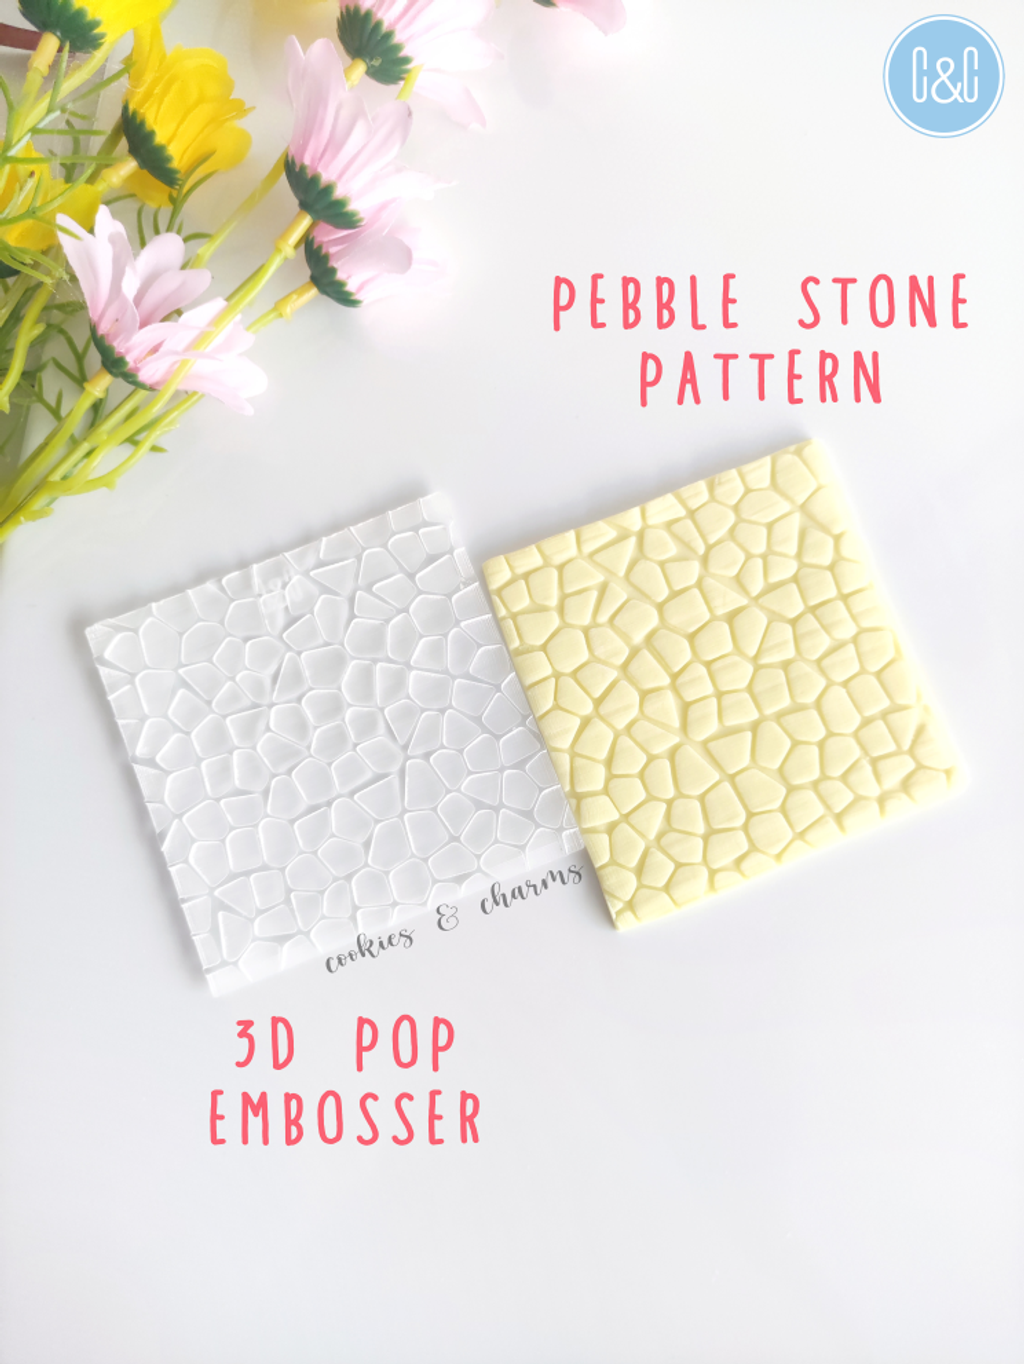 pebble stone pattern 3d pop embosser 1